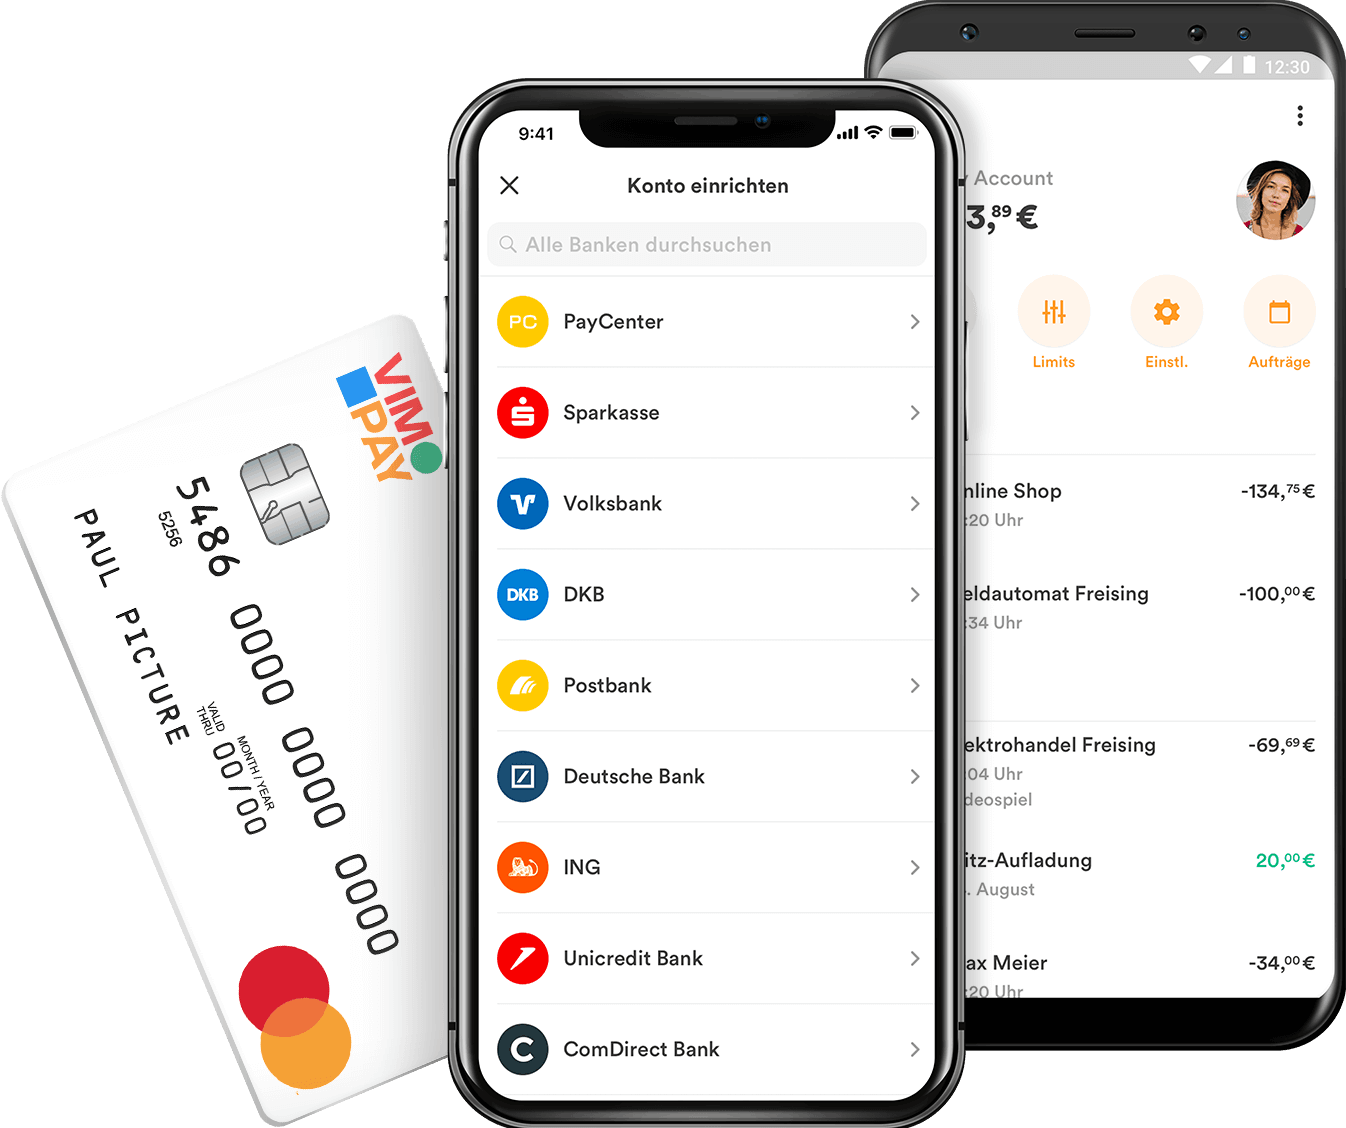 VIMpay Prepaid Mastercard Basic - Alle Infos Zu Den Konditionen & Zur Beantragung